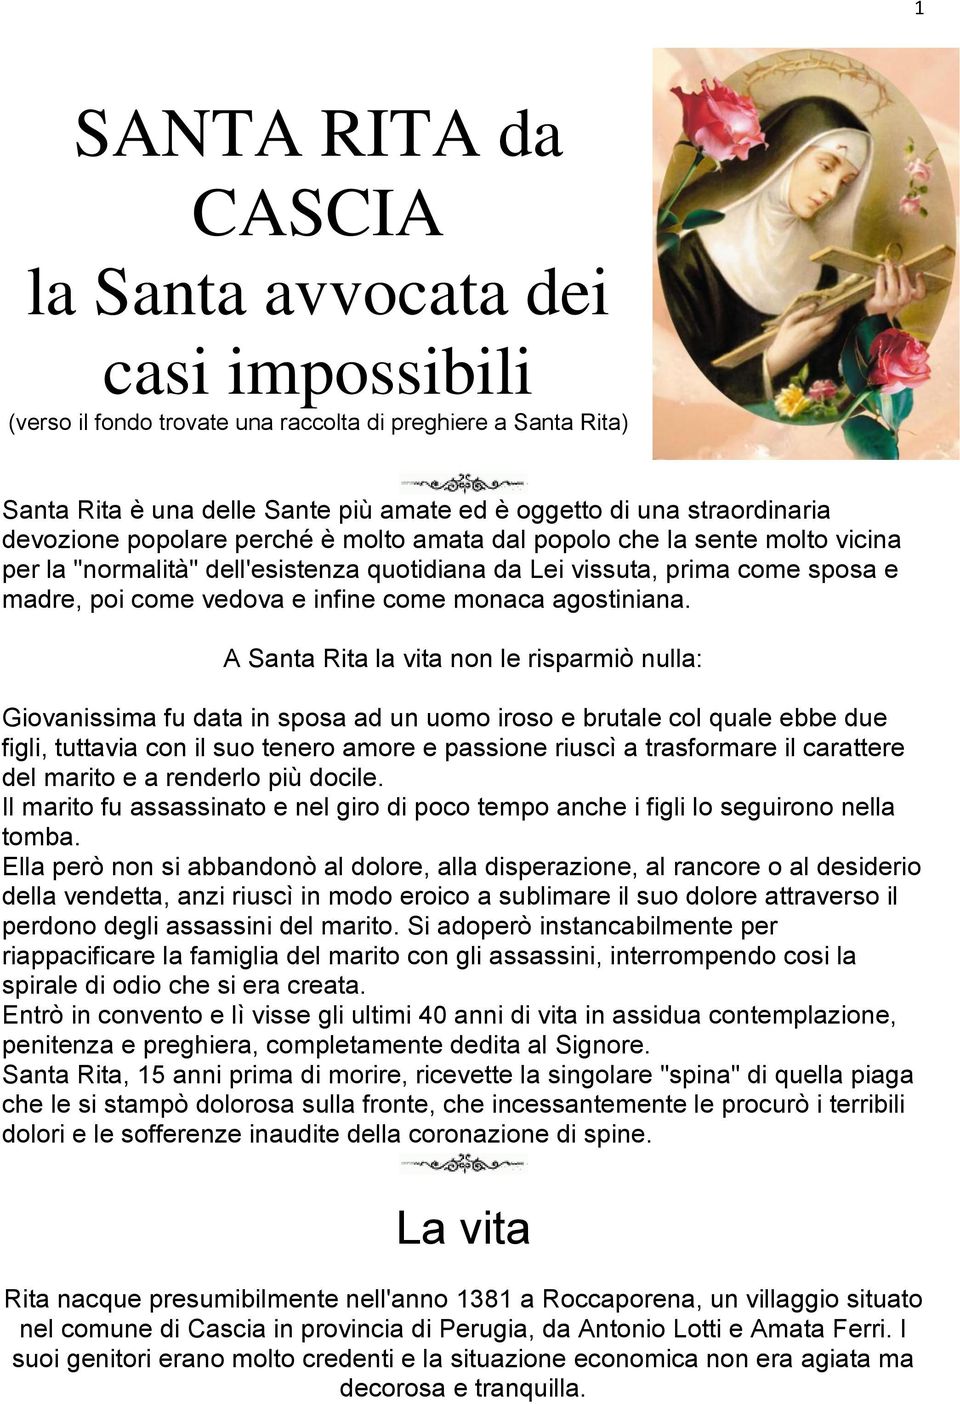 Santa Rita Da Cascia La Santa Avvocata Dei Casi Impossibili Pdf Free Download